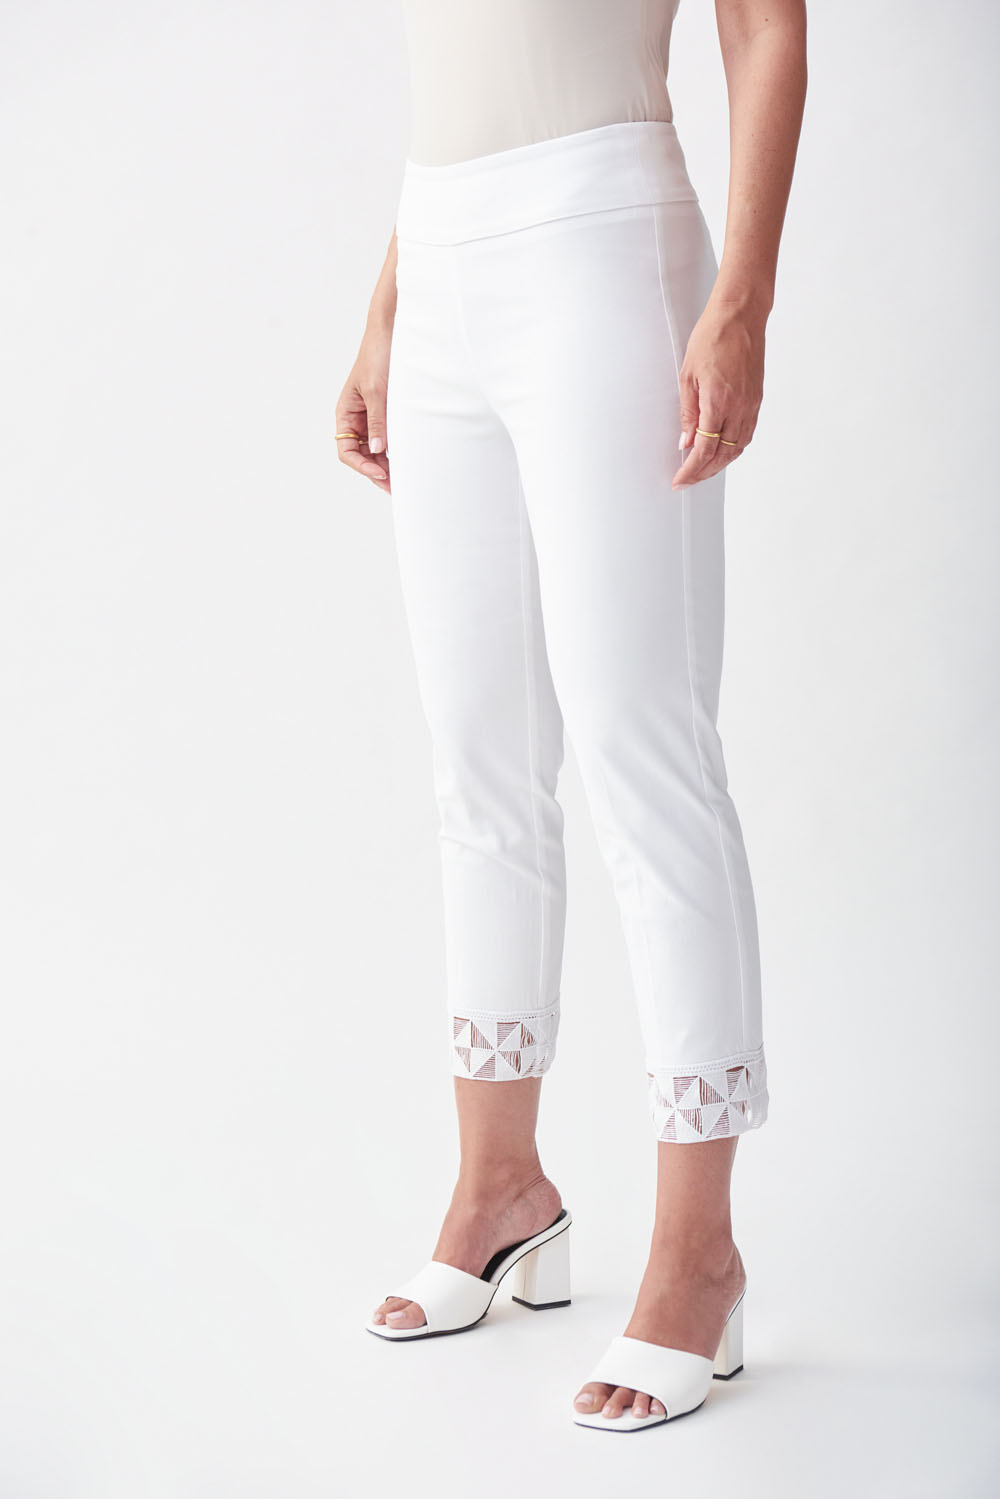 Joseph Ribkoff White Capri Pants Style 231021